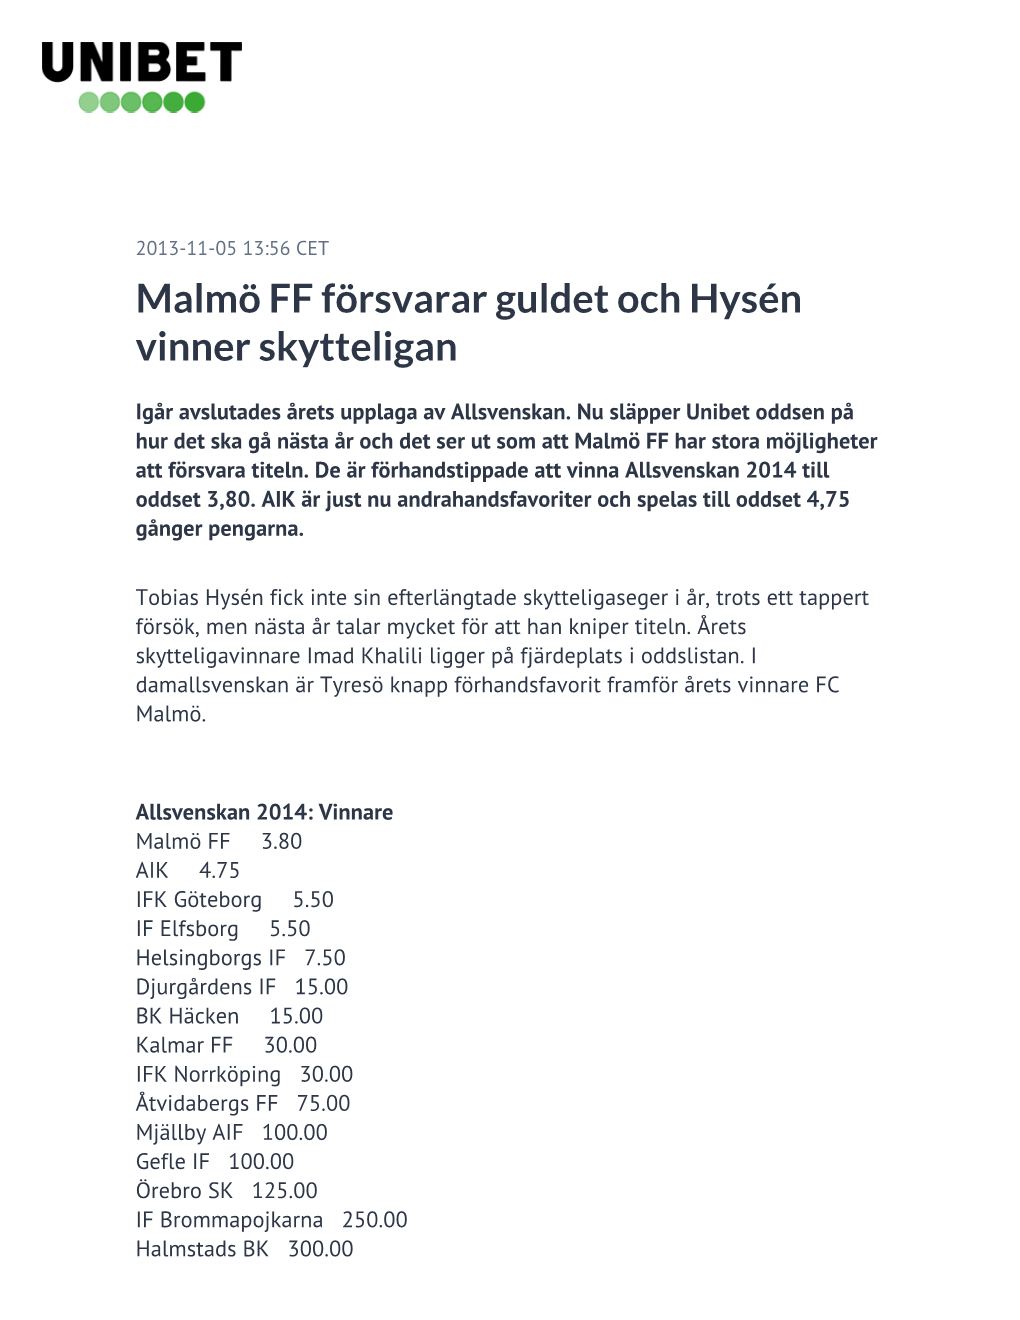 Malmö FF Försvarar Guldet Och Hysén Vinner Skytteligan